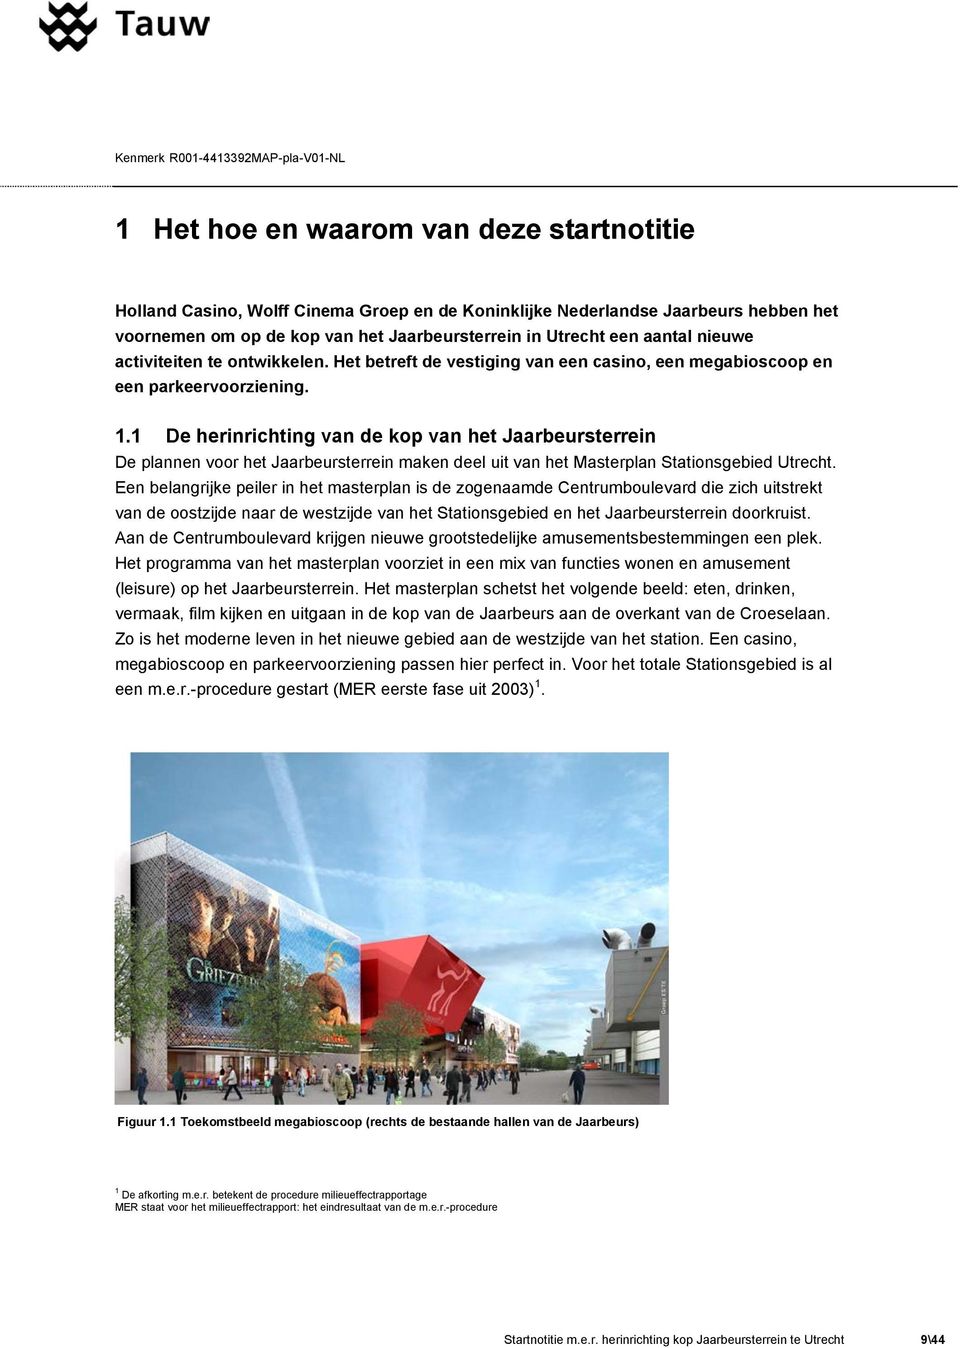 1 De herinrichting van de kop van het Jaarbeursterrein De plannen voor het Jaarbeursterrein maken deel uit van het Masterplan Stationsgebied Utrecht.